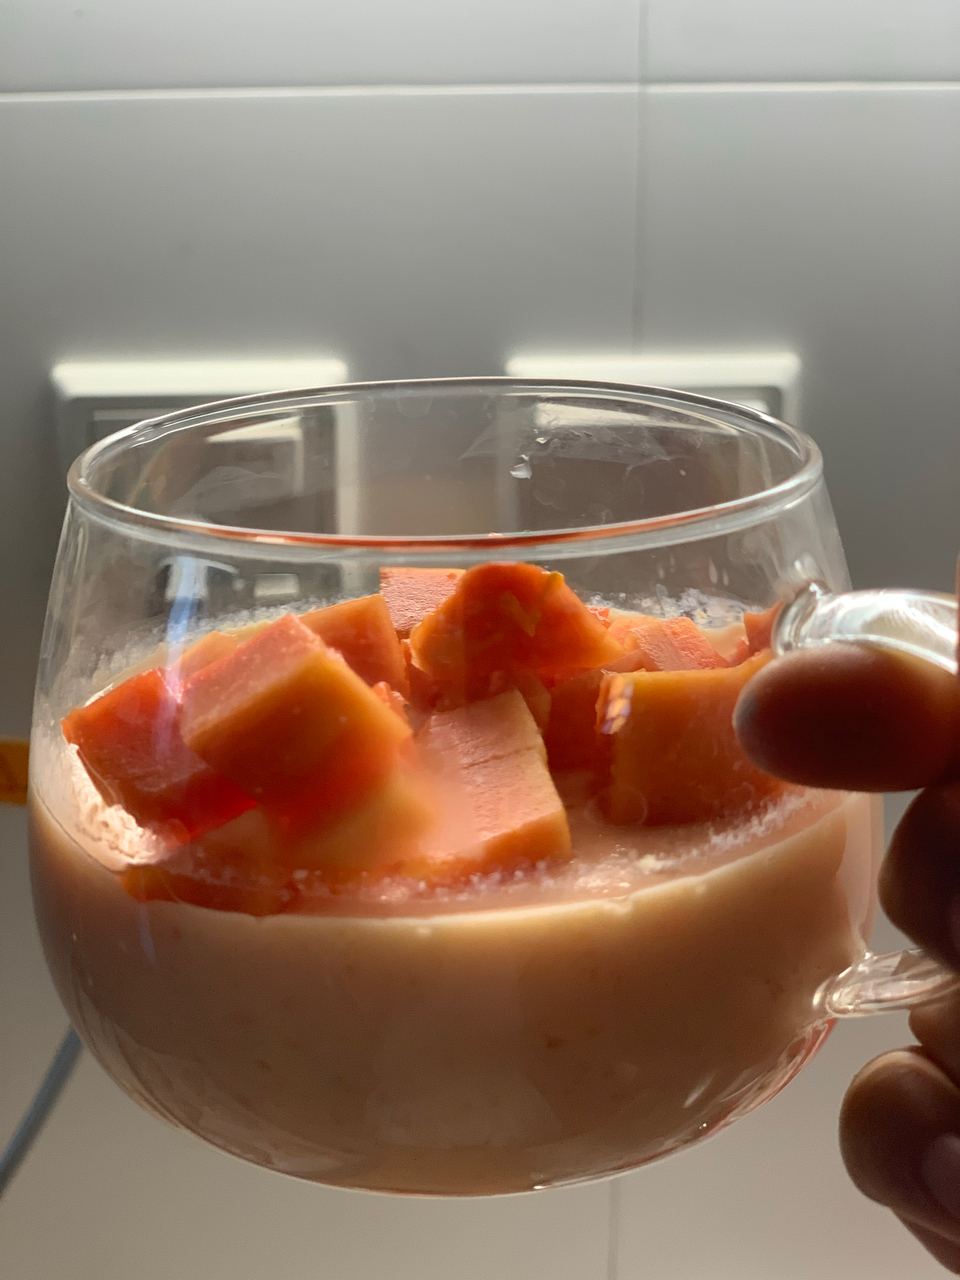 超级简单好吃的小甜品 木瓜撞奶